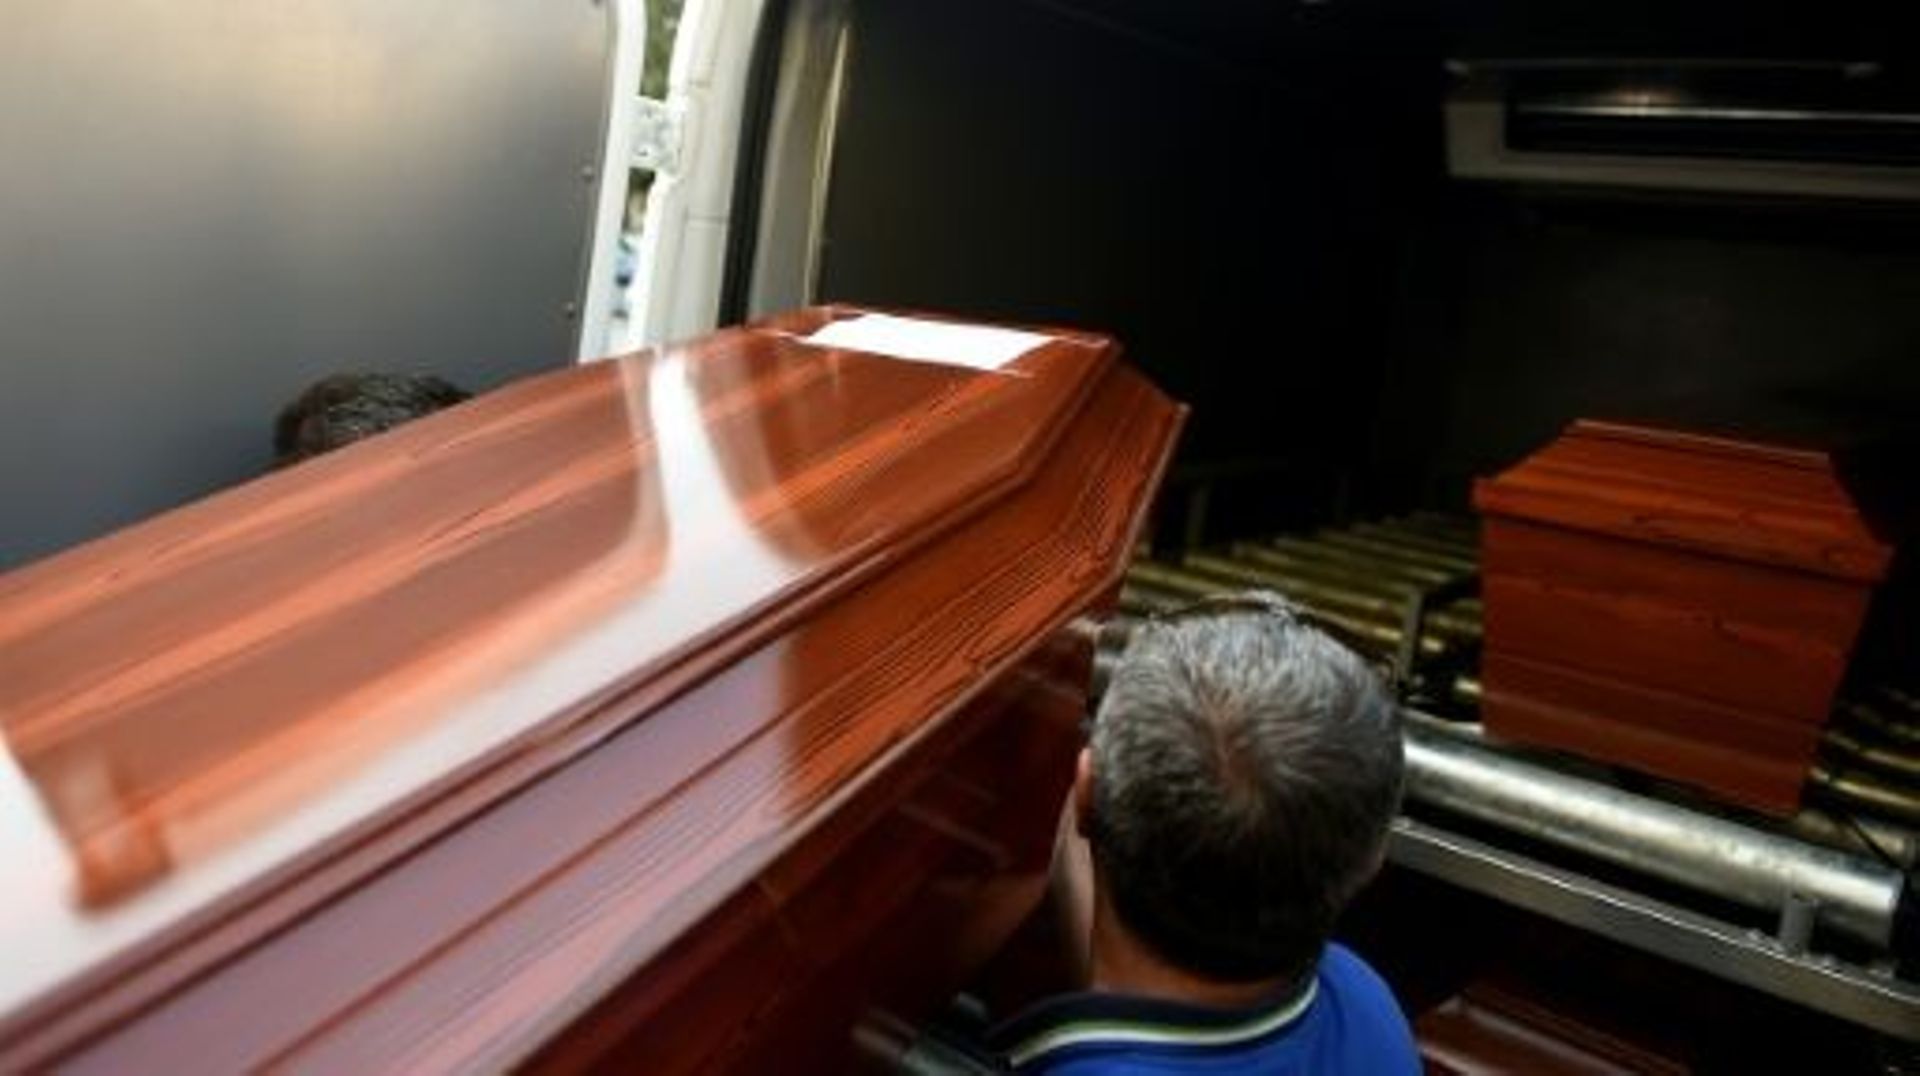 Des cercueils dont celui du petit Syrien mort noyé, embarqués dans un véhicule le 3 août 2015 à Mugla en Turquie  